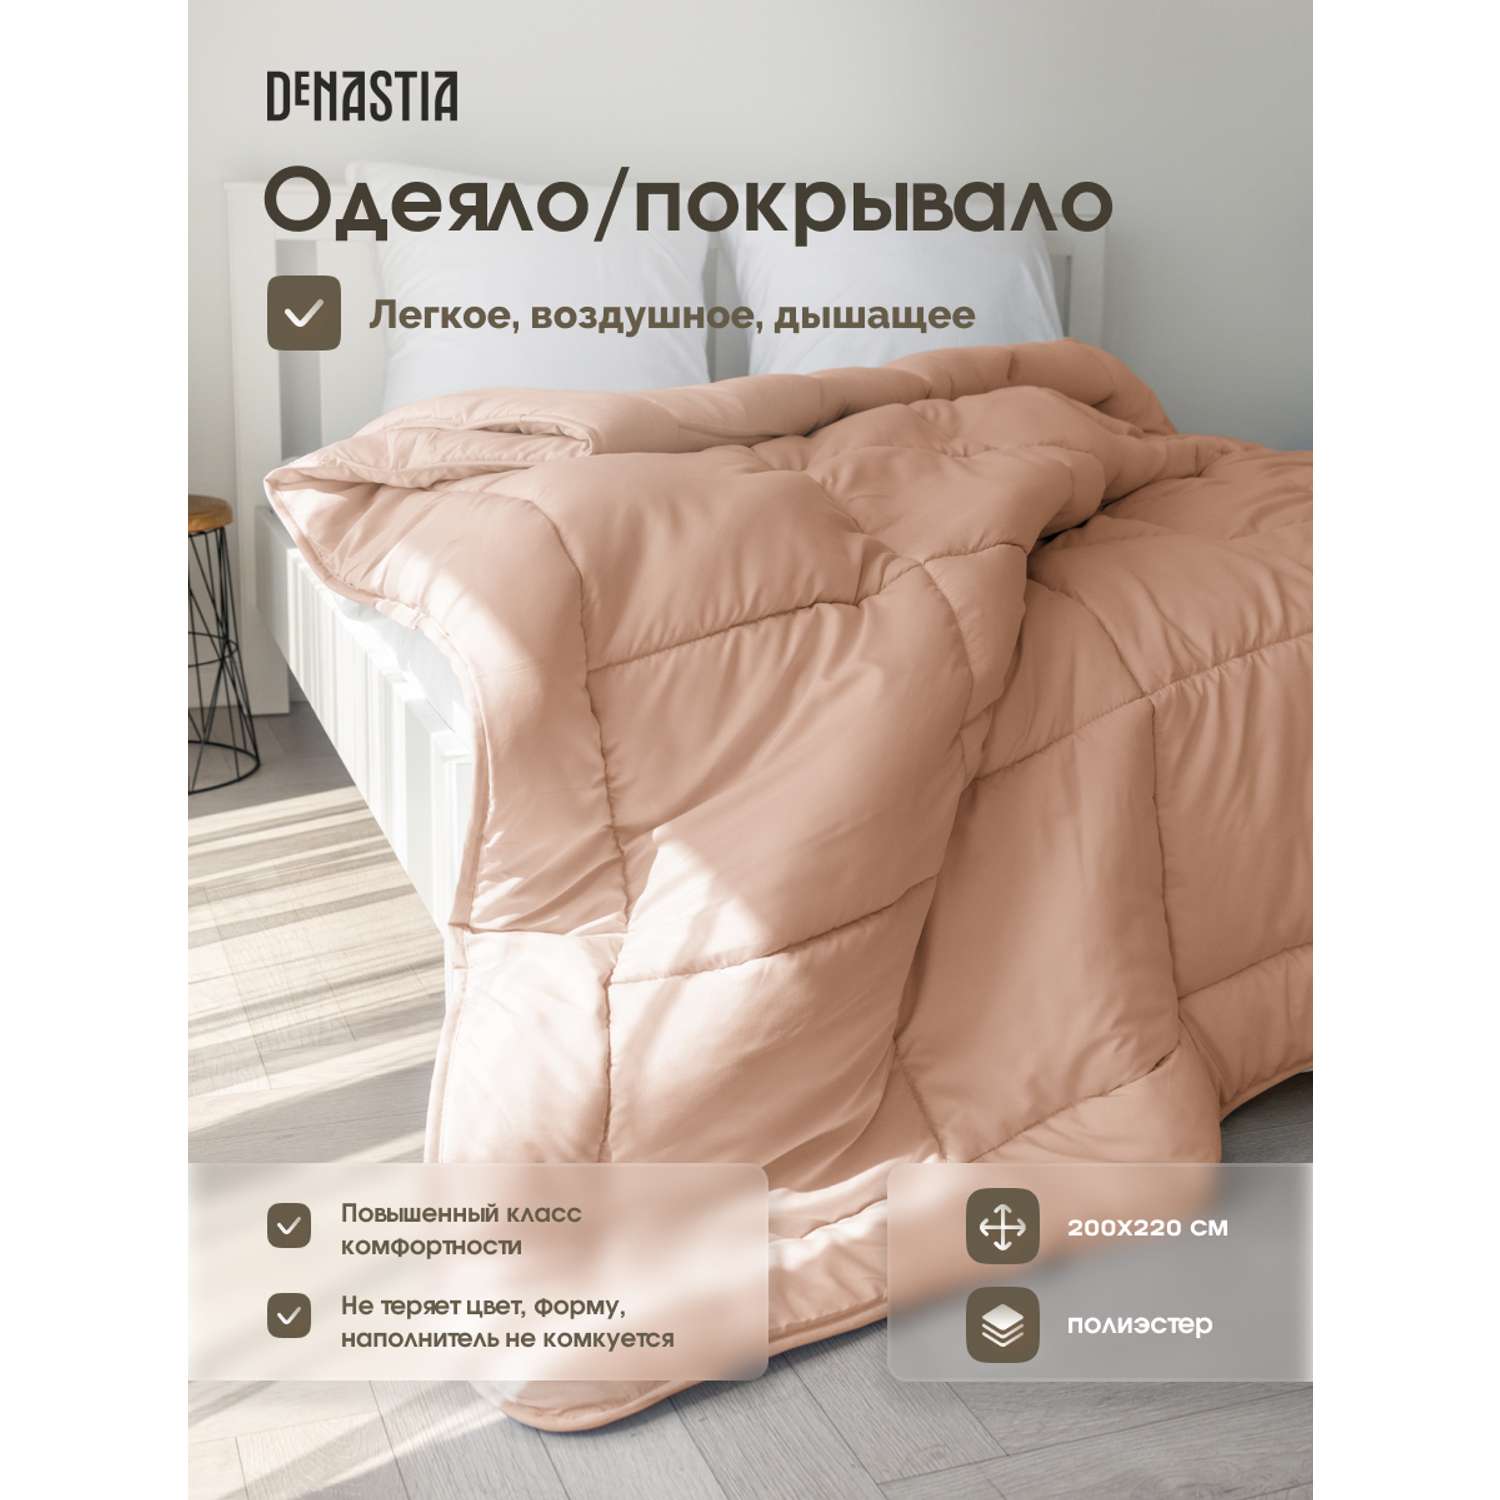 Одеяло/покрывало DeNASTIA 200x220 см розовый R020018 - фото 2